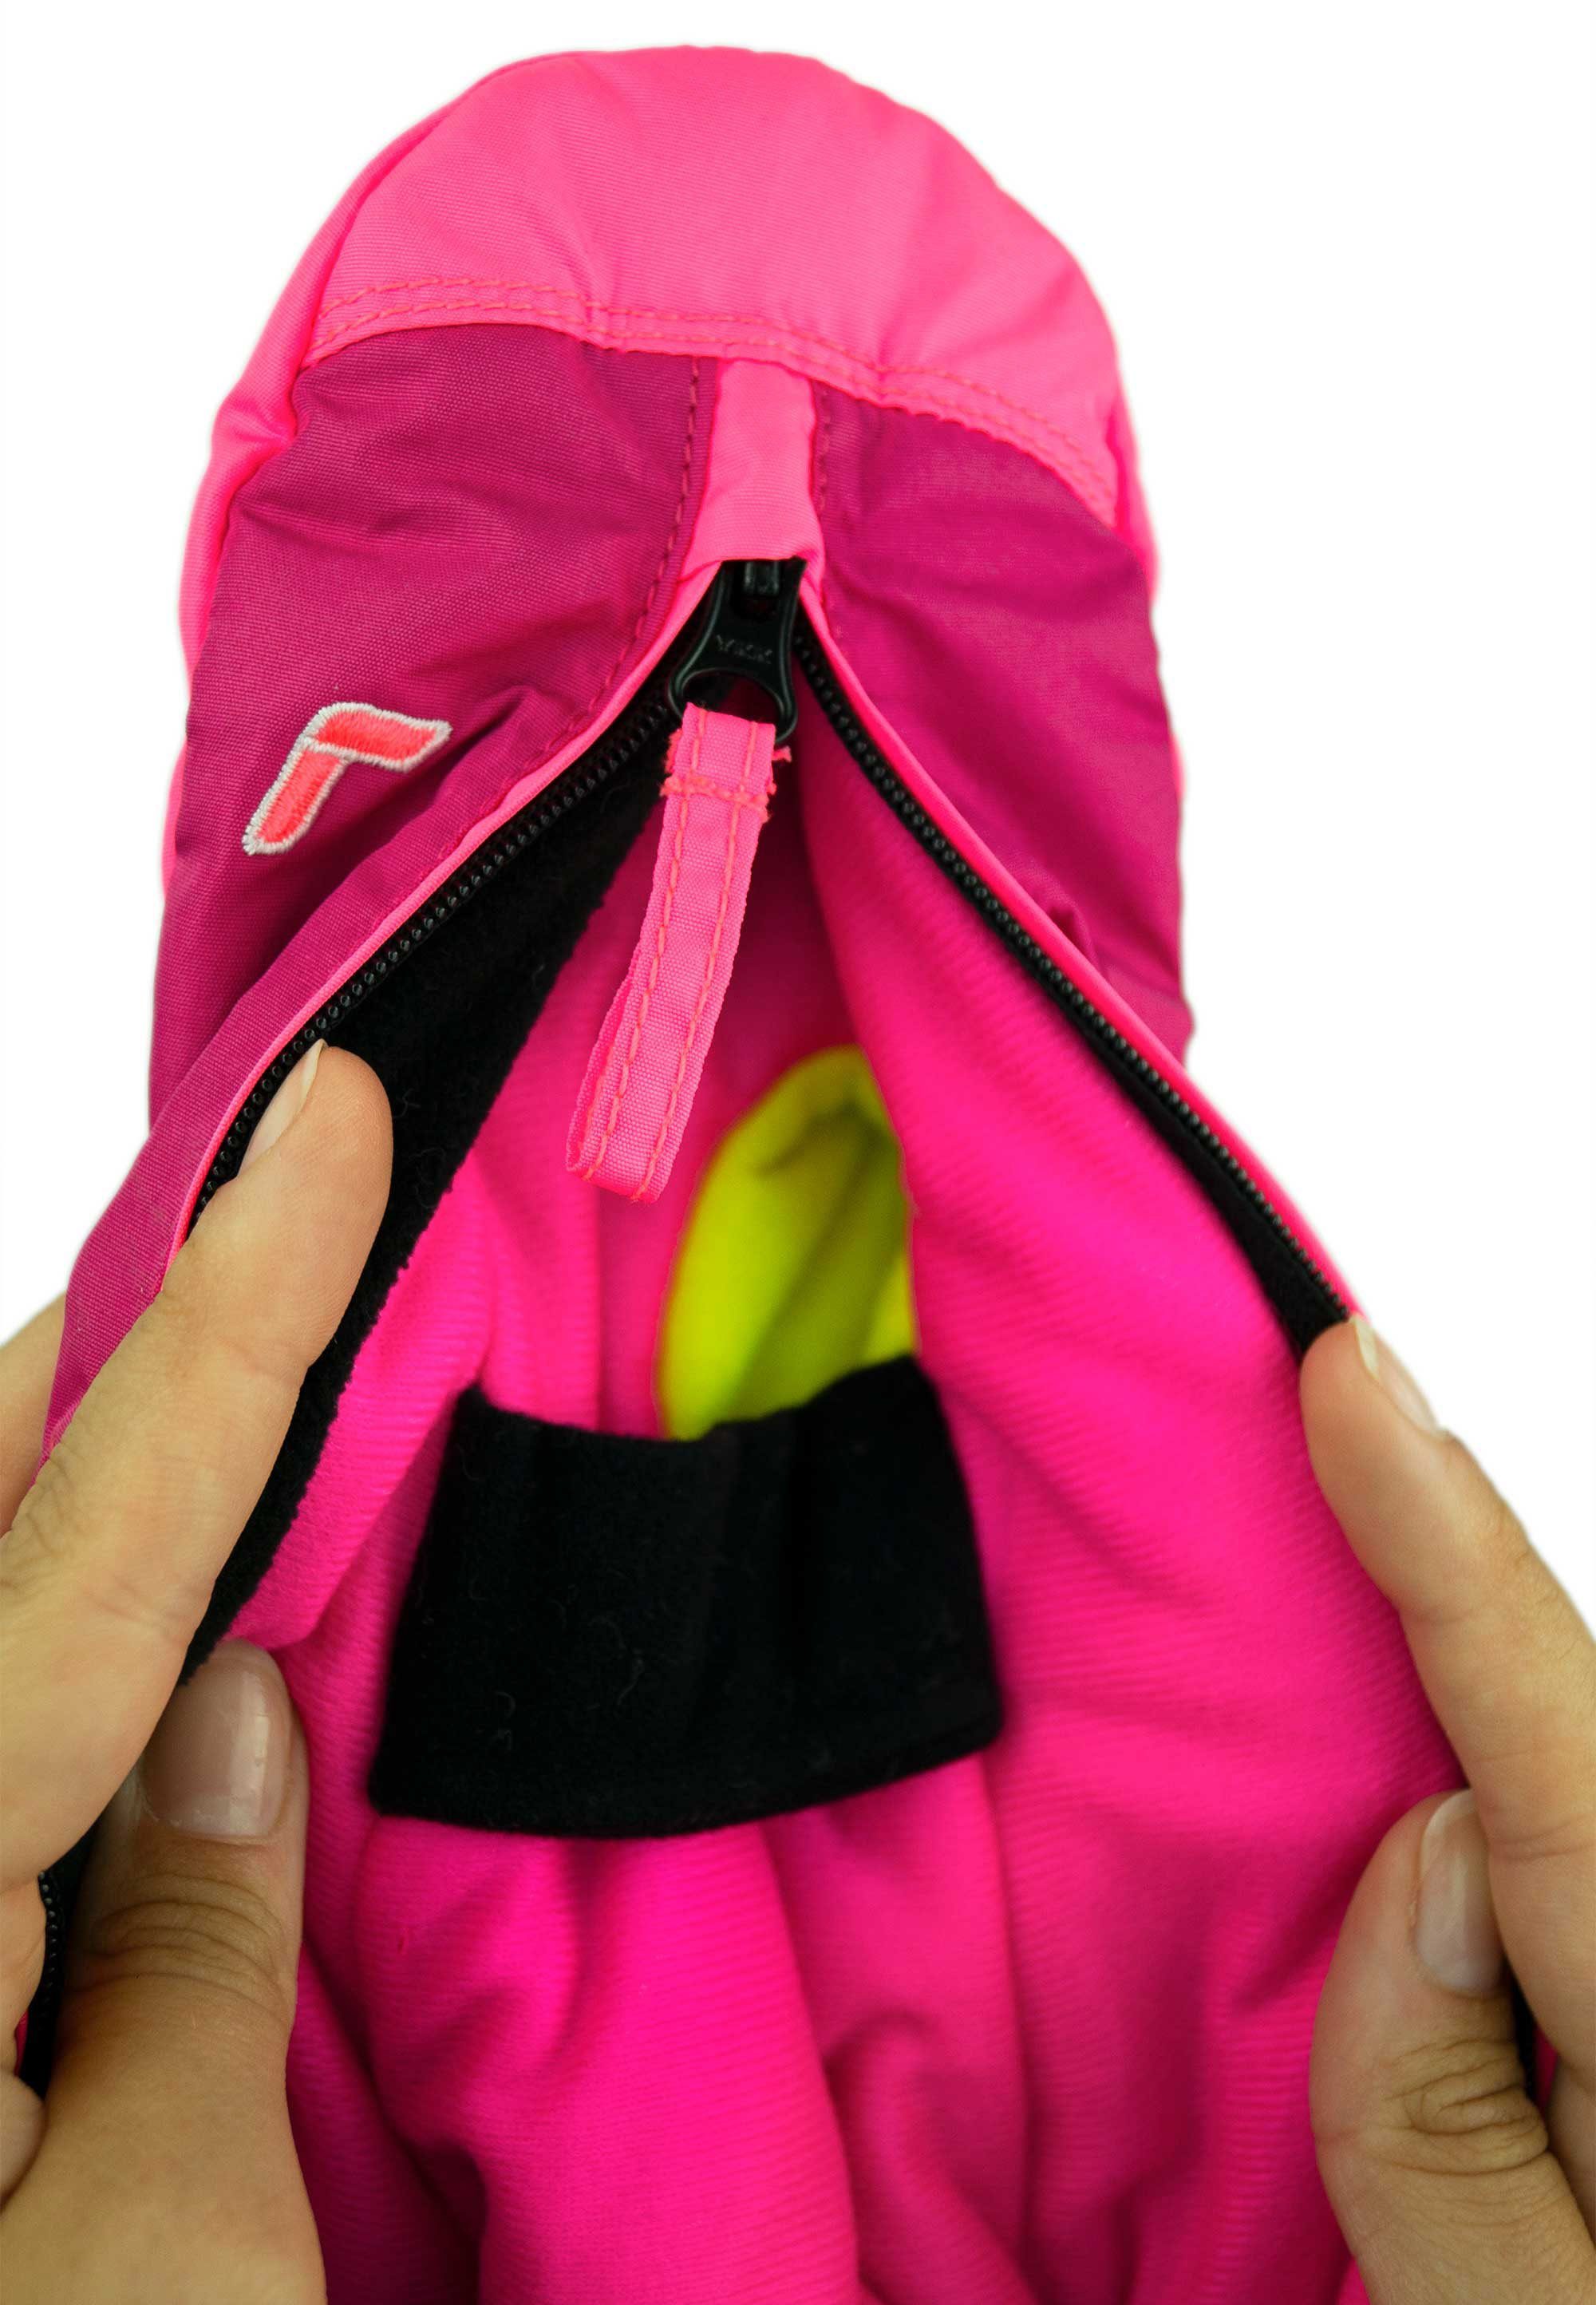 Tom Reusch Mitten aus lila-pink Material extra atmungsaktivem Fäustlinge